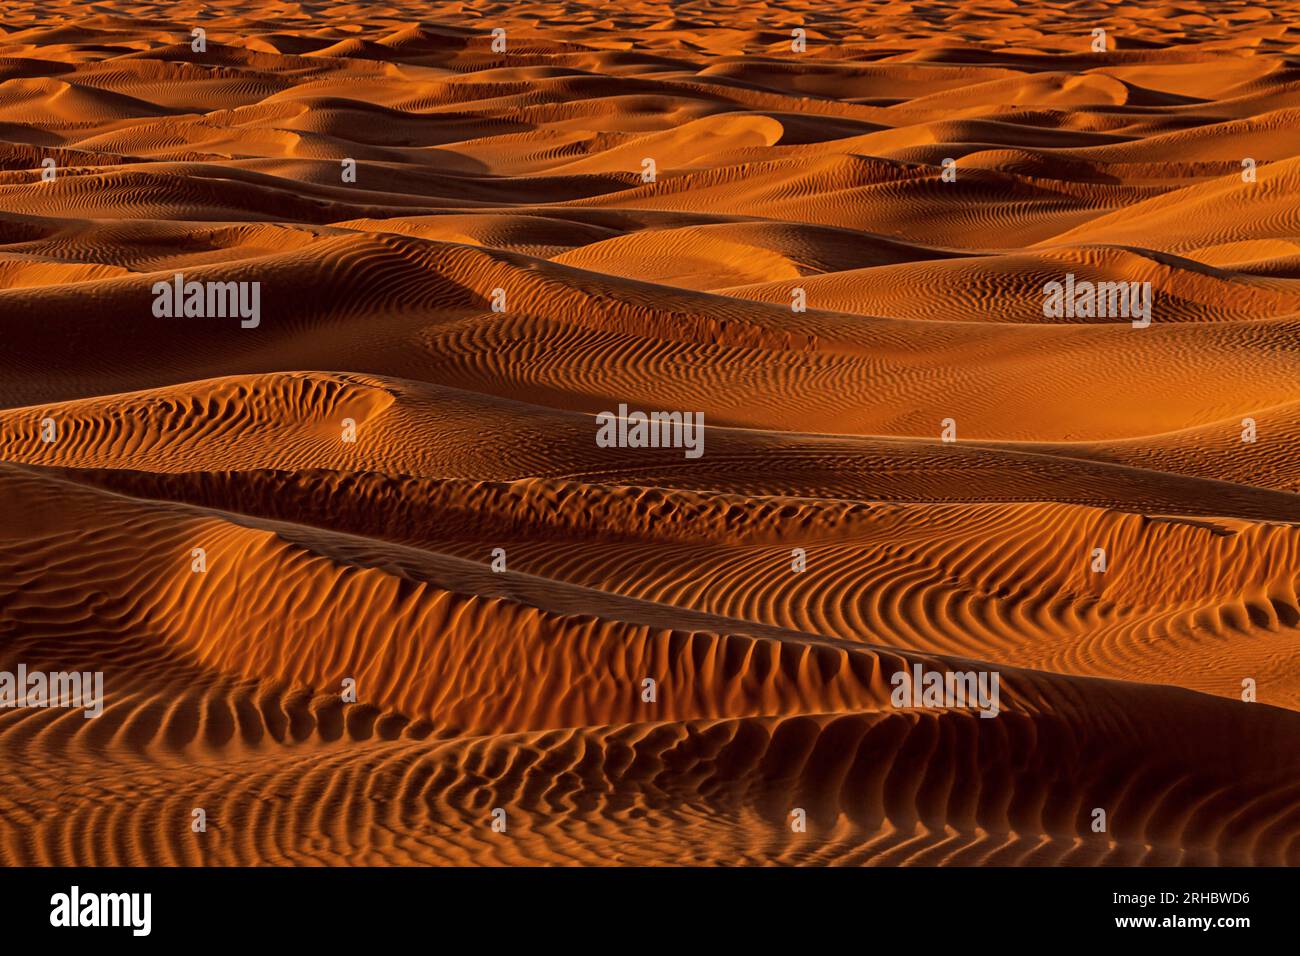 Nahaufnahme von orangefarbenen Sanddünen in der Wüste, Saudi-Arabien Stockfoto